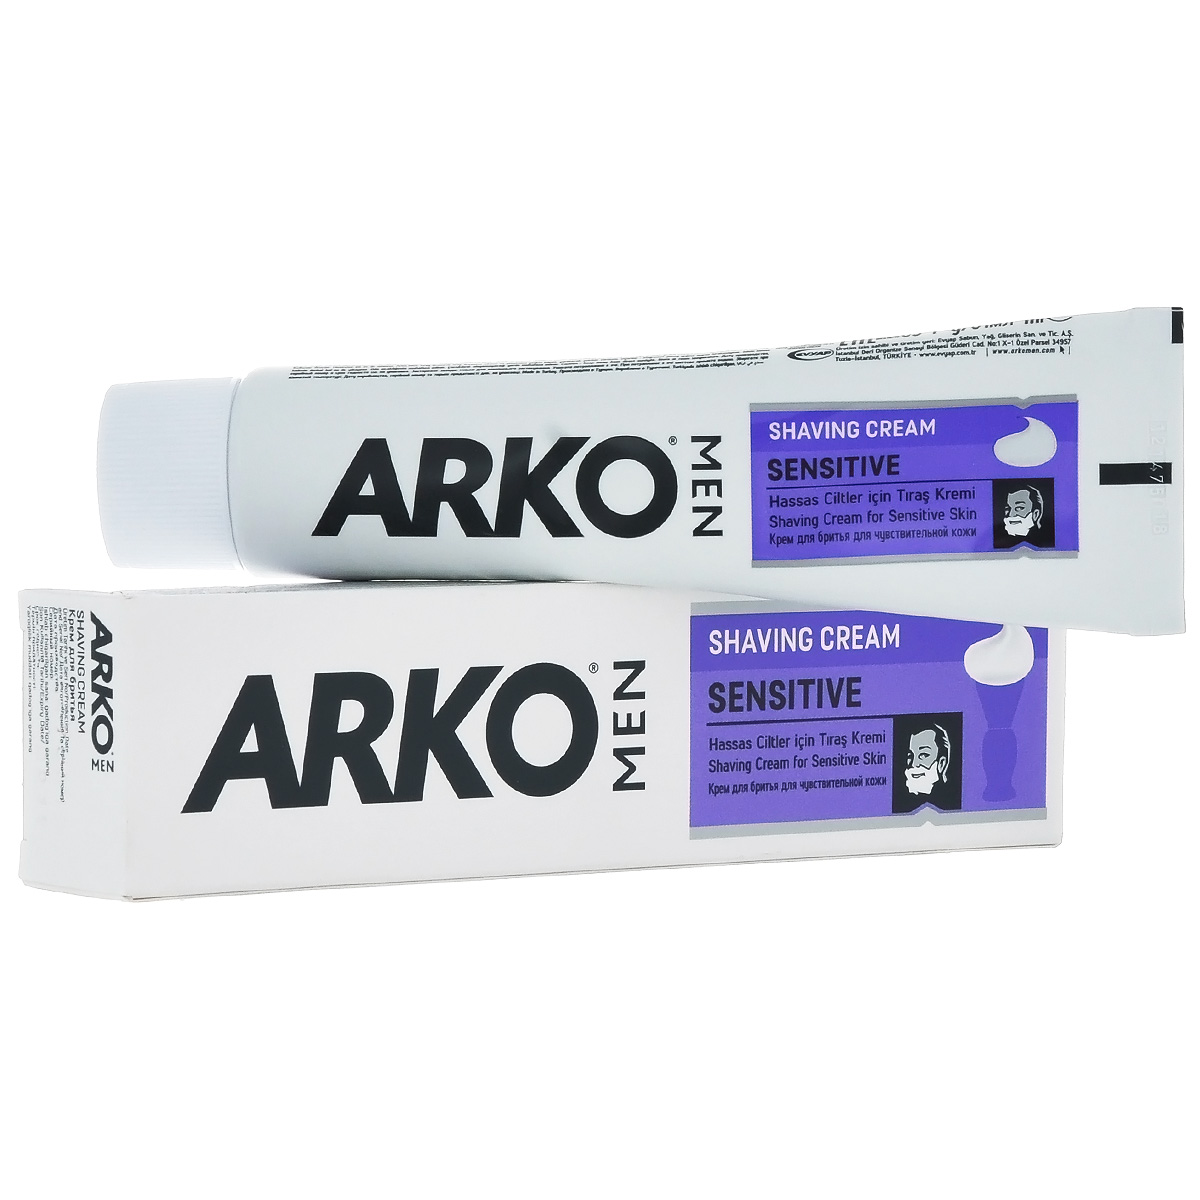 Arko MEN    Sensitive 65 - Arko - Arko80052073    .          .